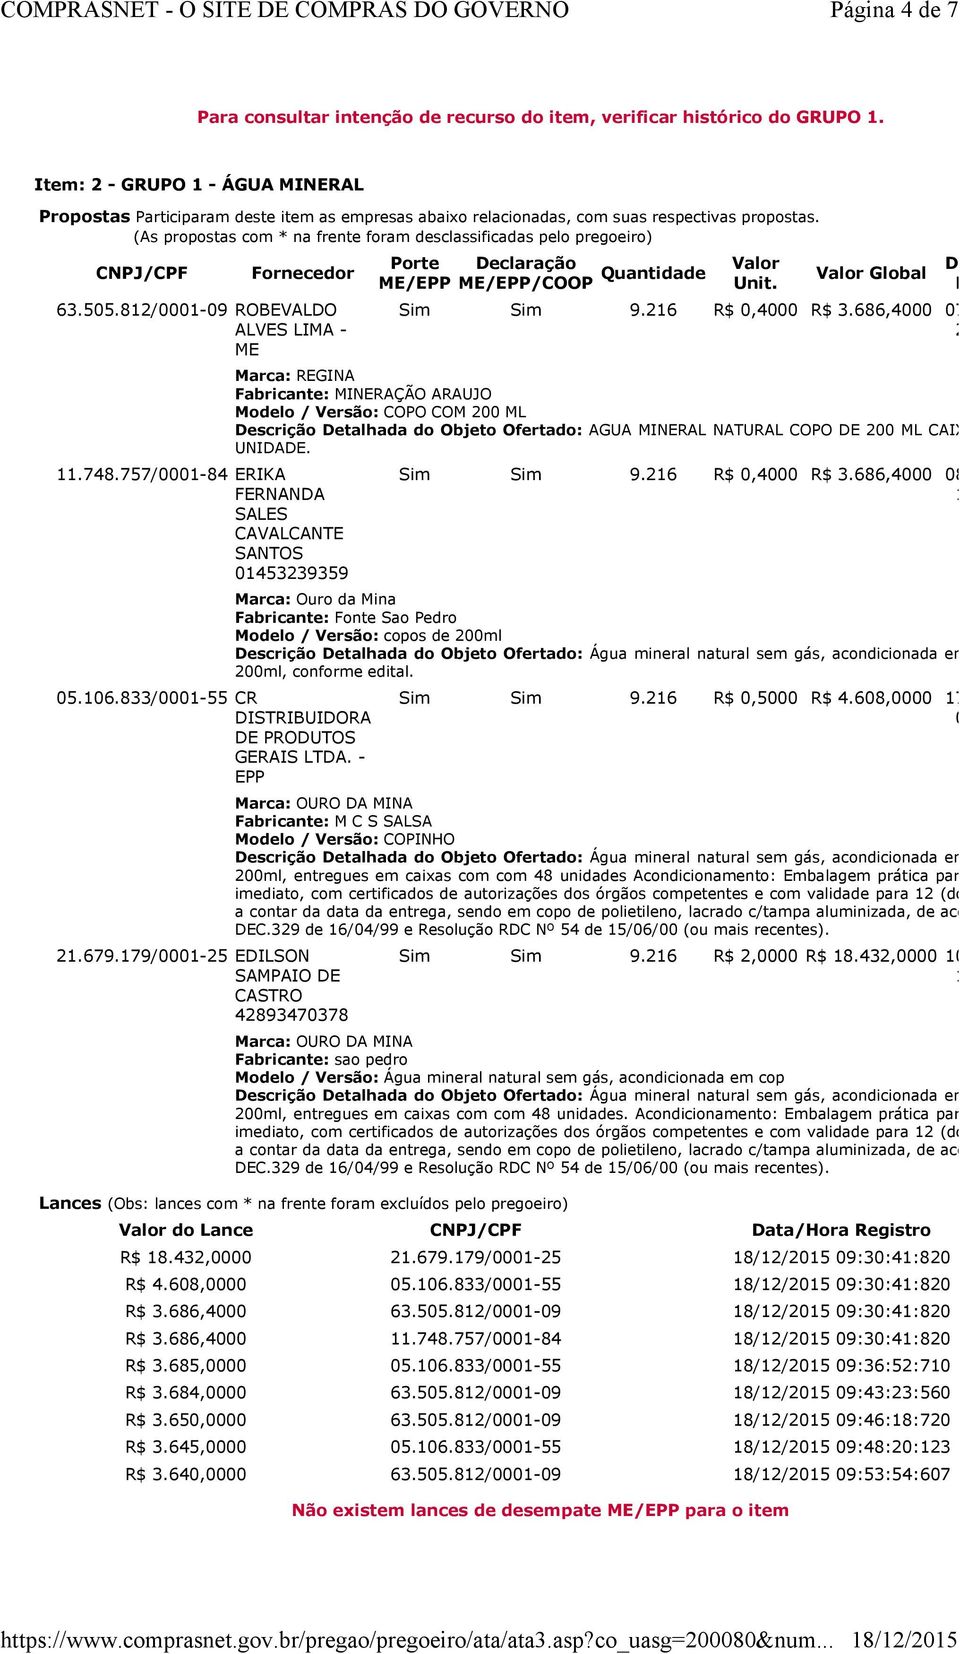 (As propostas com * na frente foram desclassificadas pelo pregoeiro) CNPJ/CPF Fornecedor 63.505.812/0001-09 ROBEVALDO ALVES LIMA - ME 11.748.